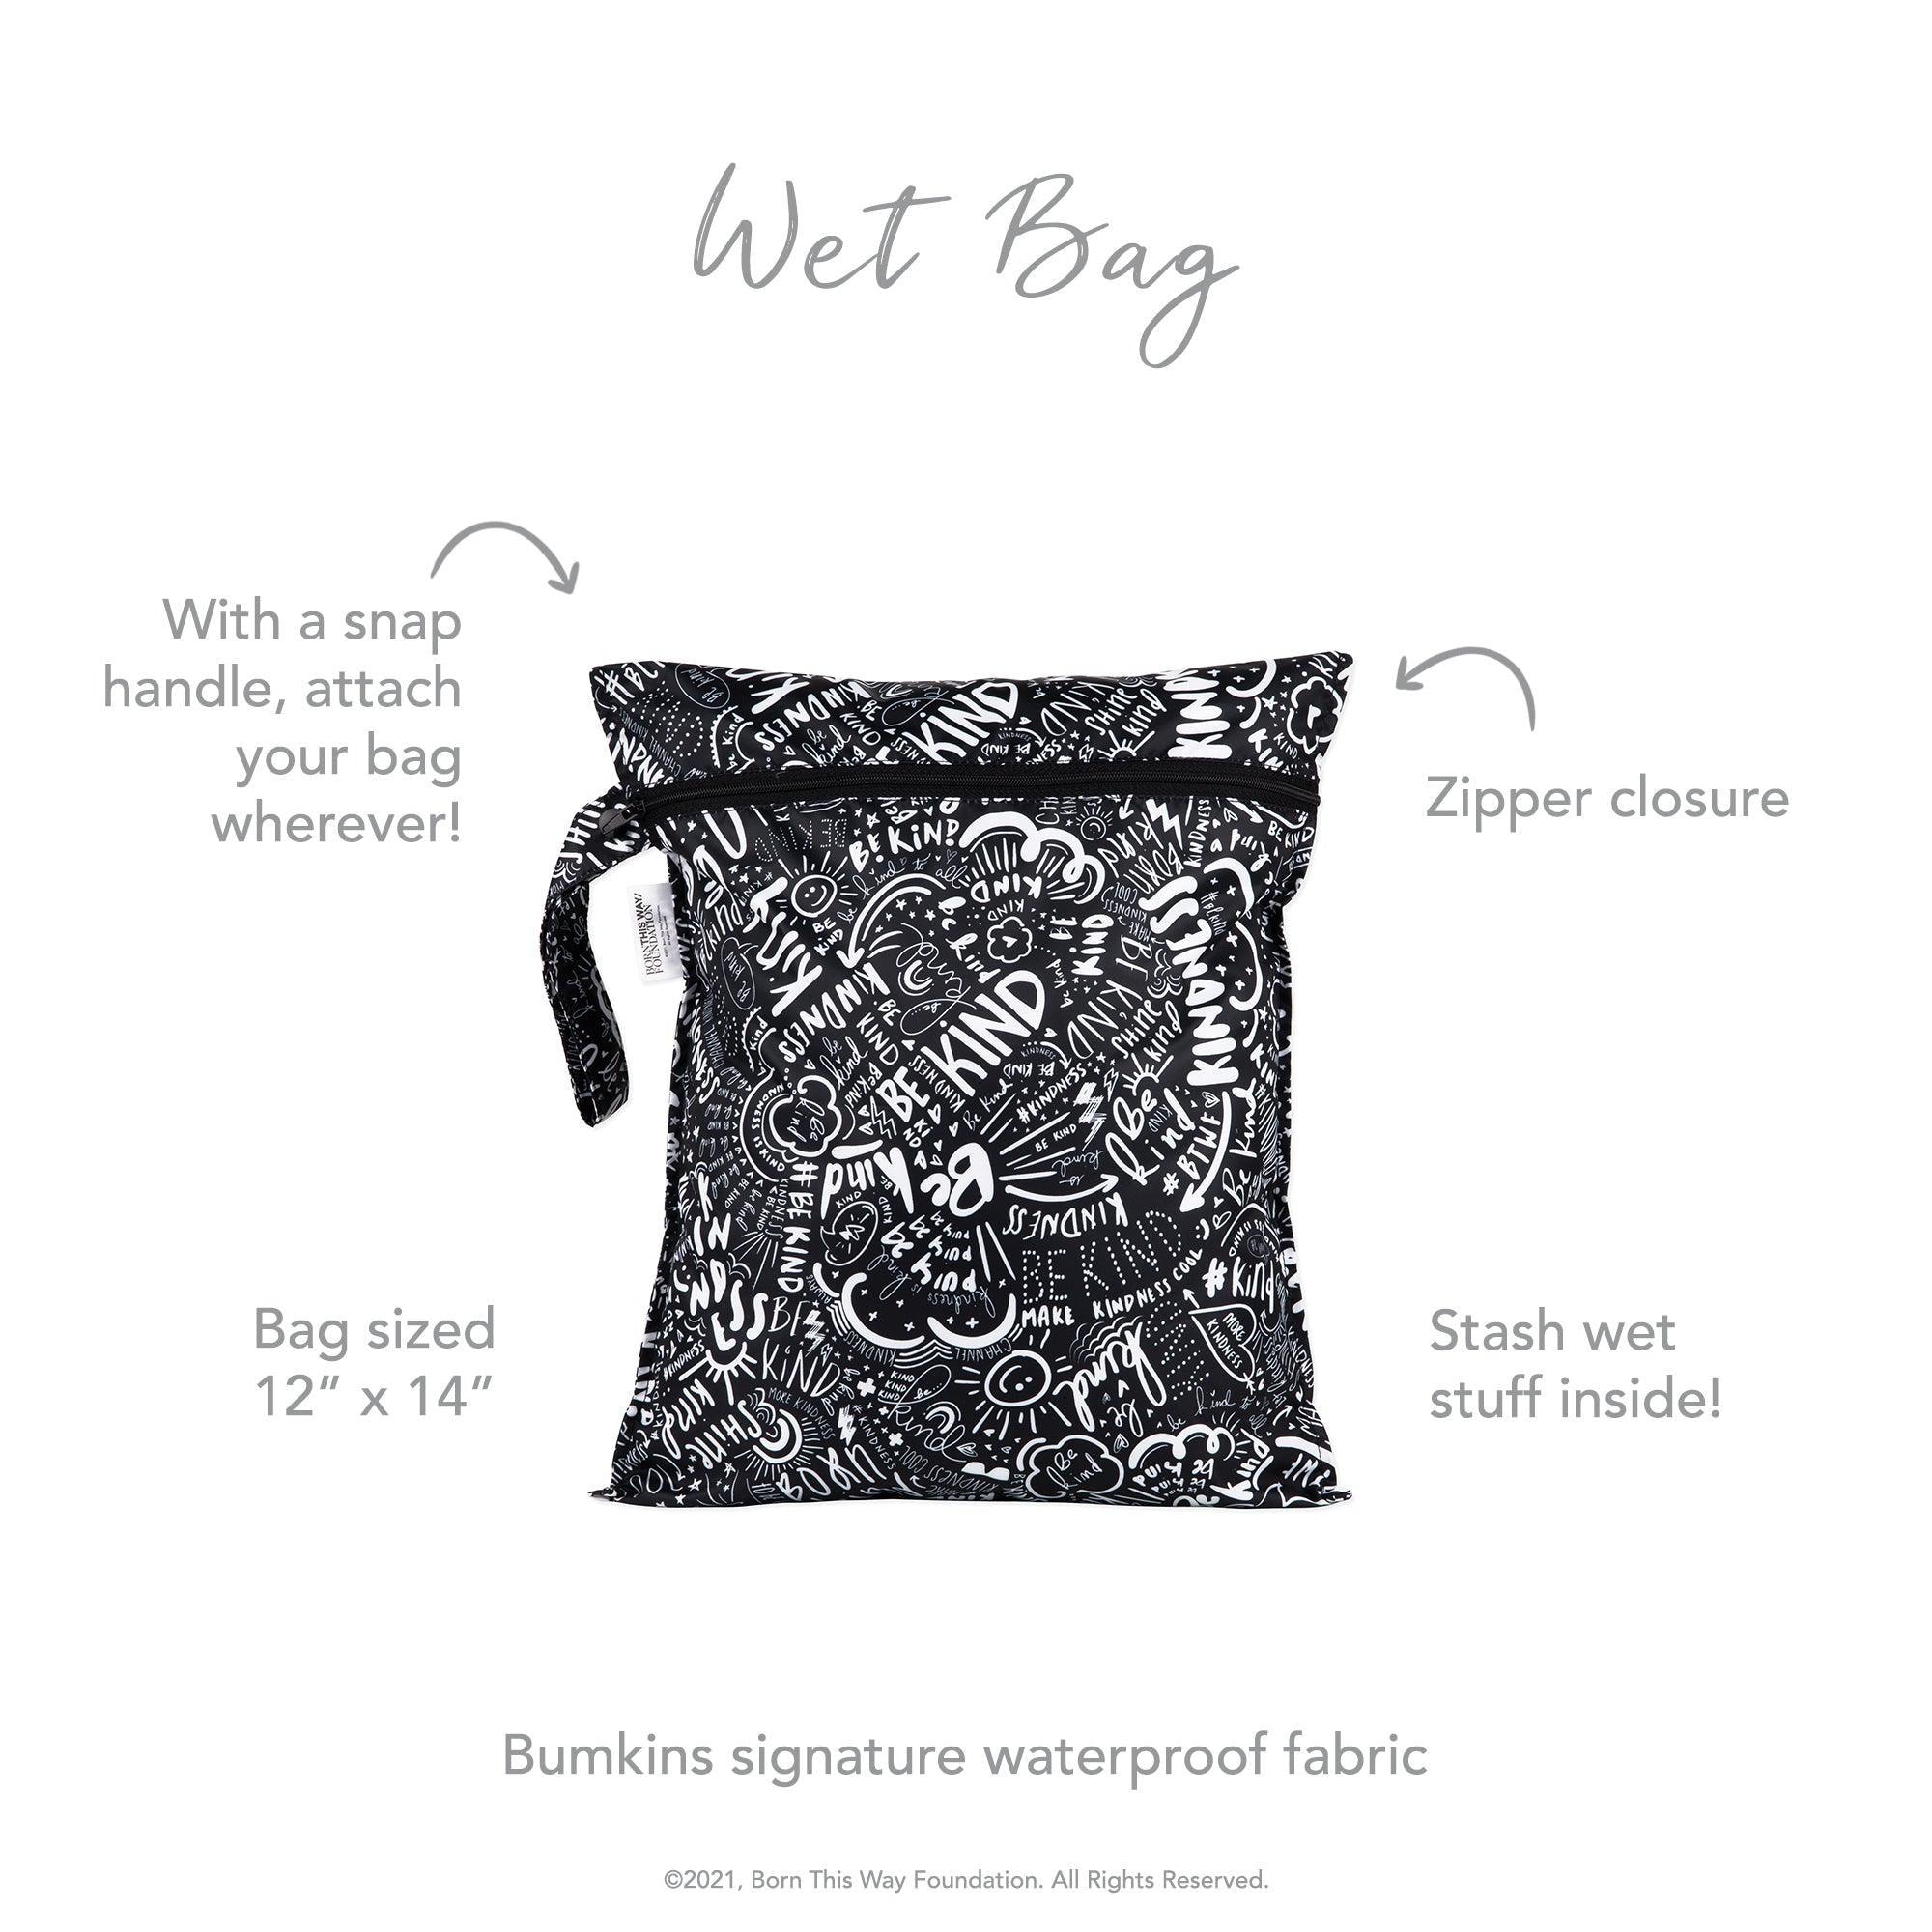 Wet Bag: Be Kind - Bumkins